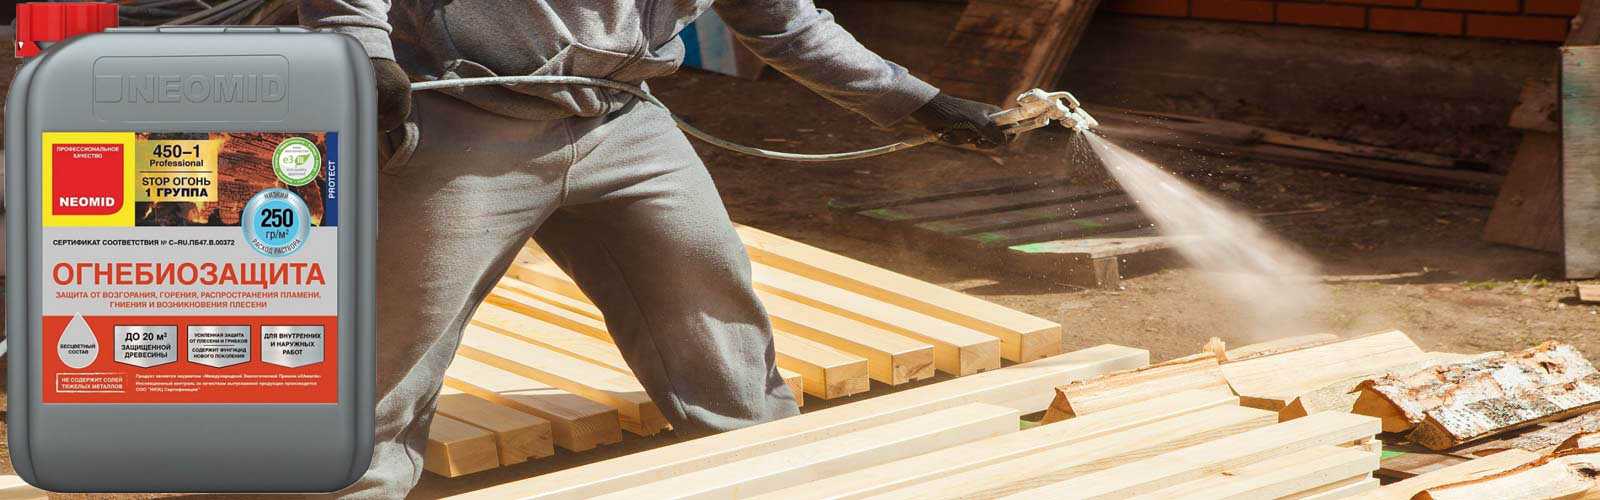 Защита древесины: способы защиты древесины от гниения